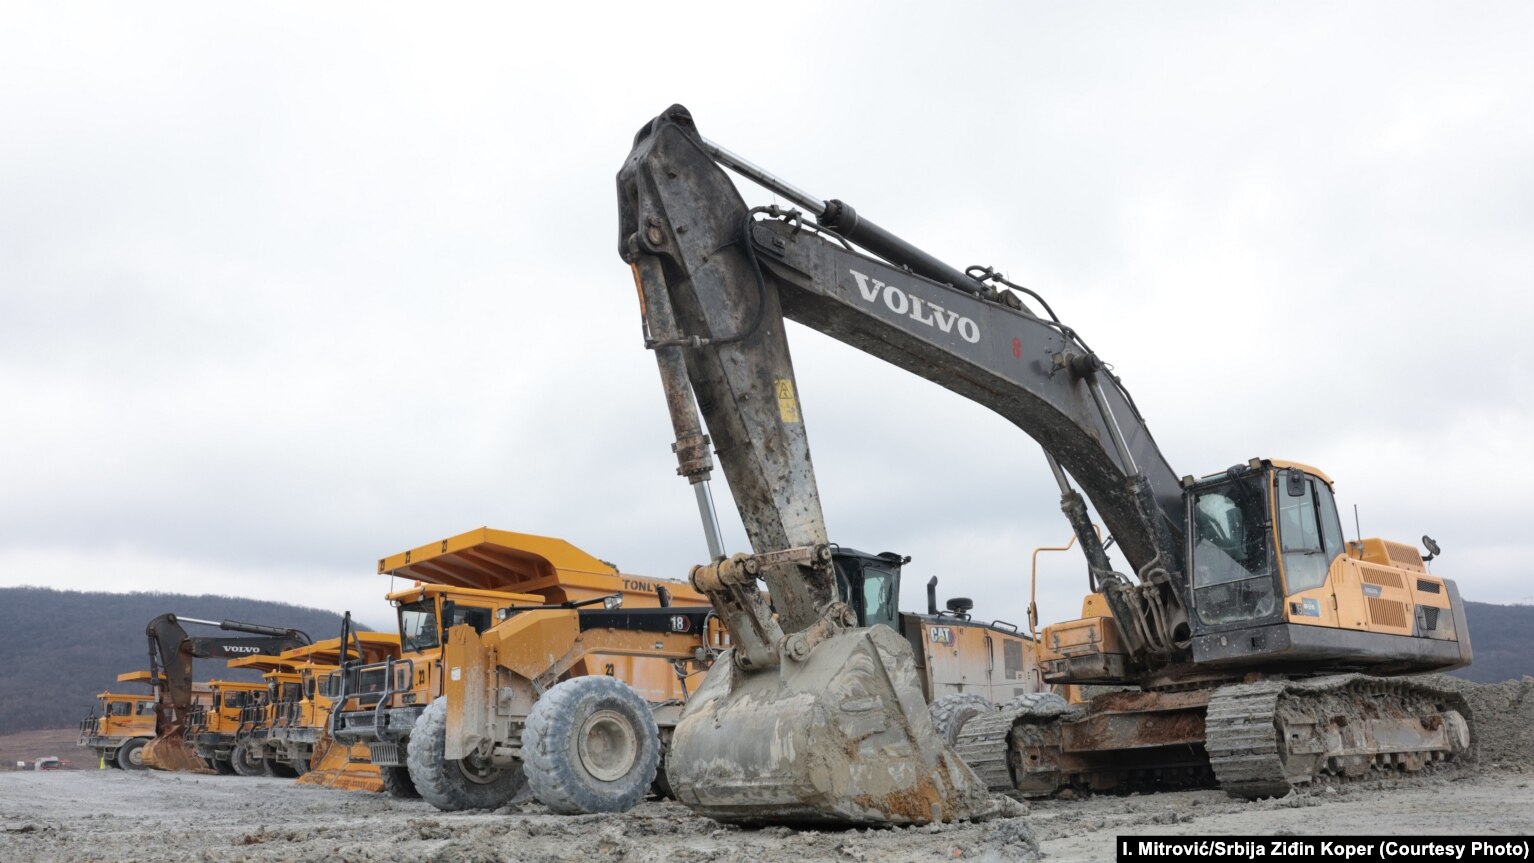 Kineska kompanija "Srbija Ziđin Koper" saopštila je 13. februara da je prinuđena da privremeno obustavi proizvodnju u rudniku "Novo Cerovo" zbog blokade puta.